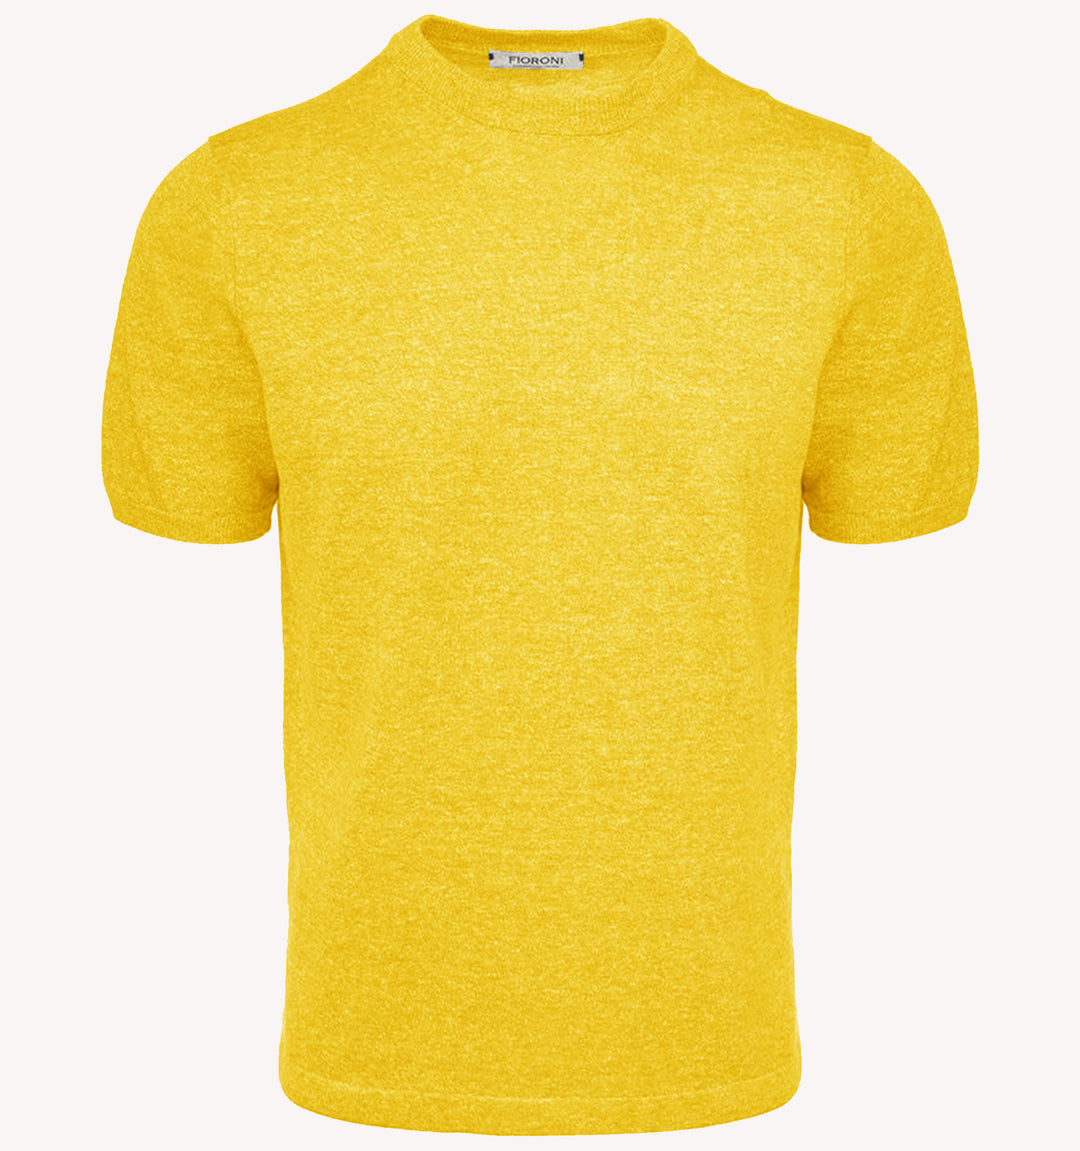 Fioroni T-shirt in Yellow